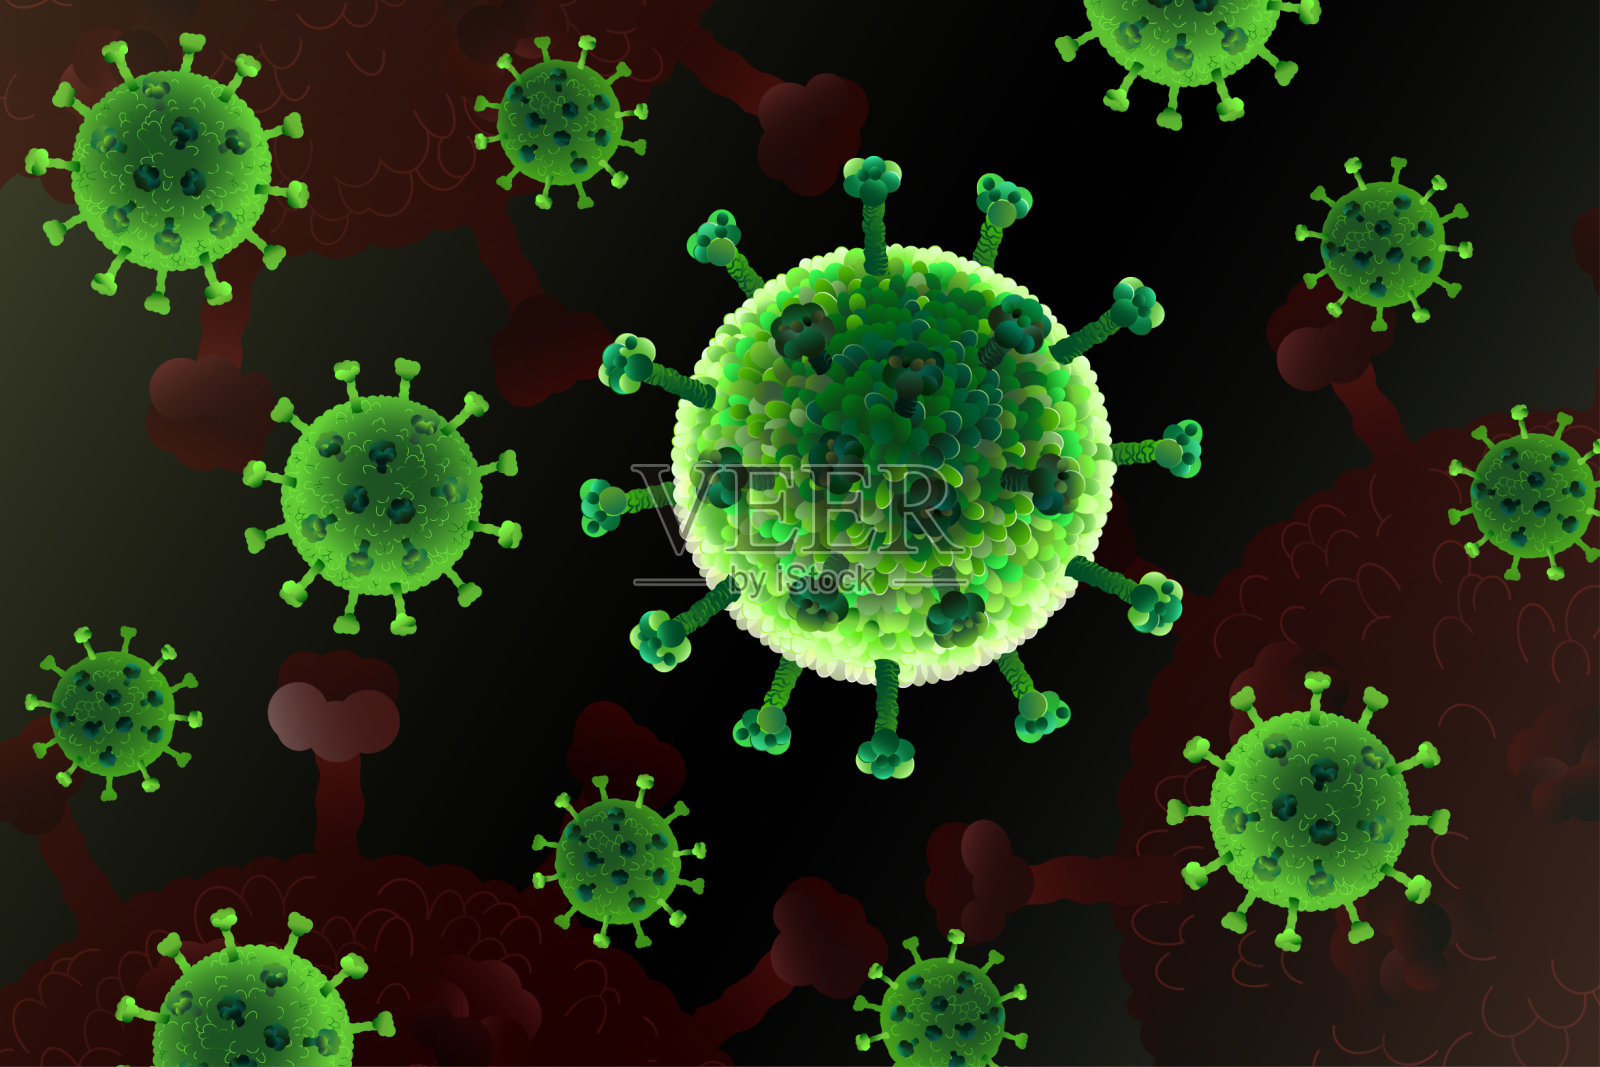 冠状病毒病COVID-19，危险的呼吸道感染，SARS-CoV-2。流感爆发，病原体流感或艾滋病毒，癌细胞。插画图片素材